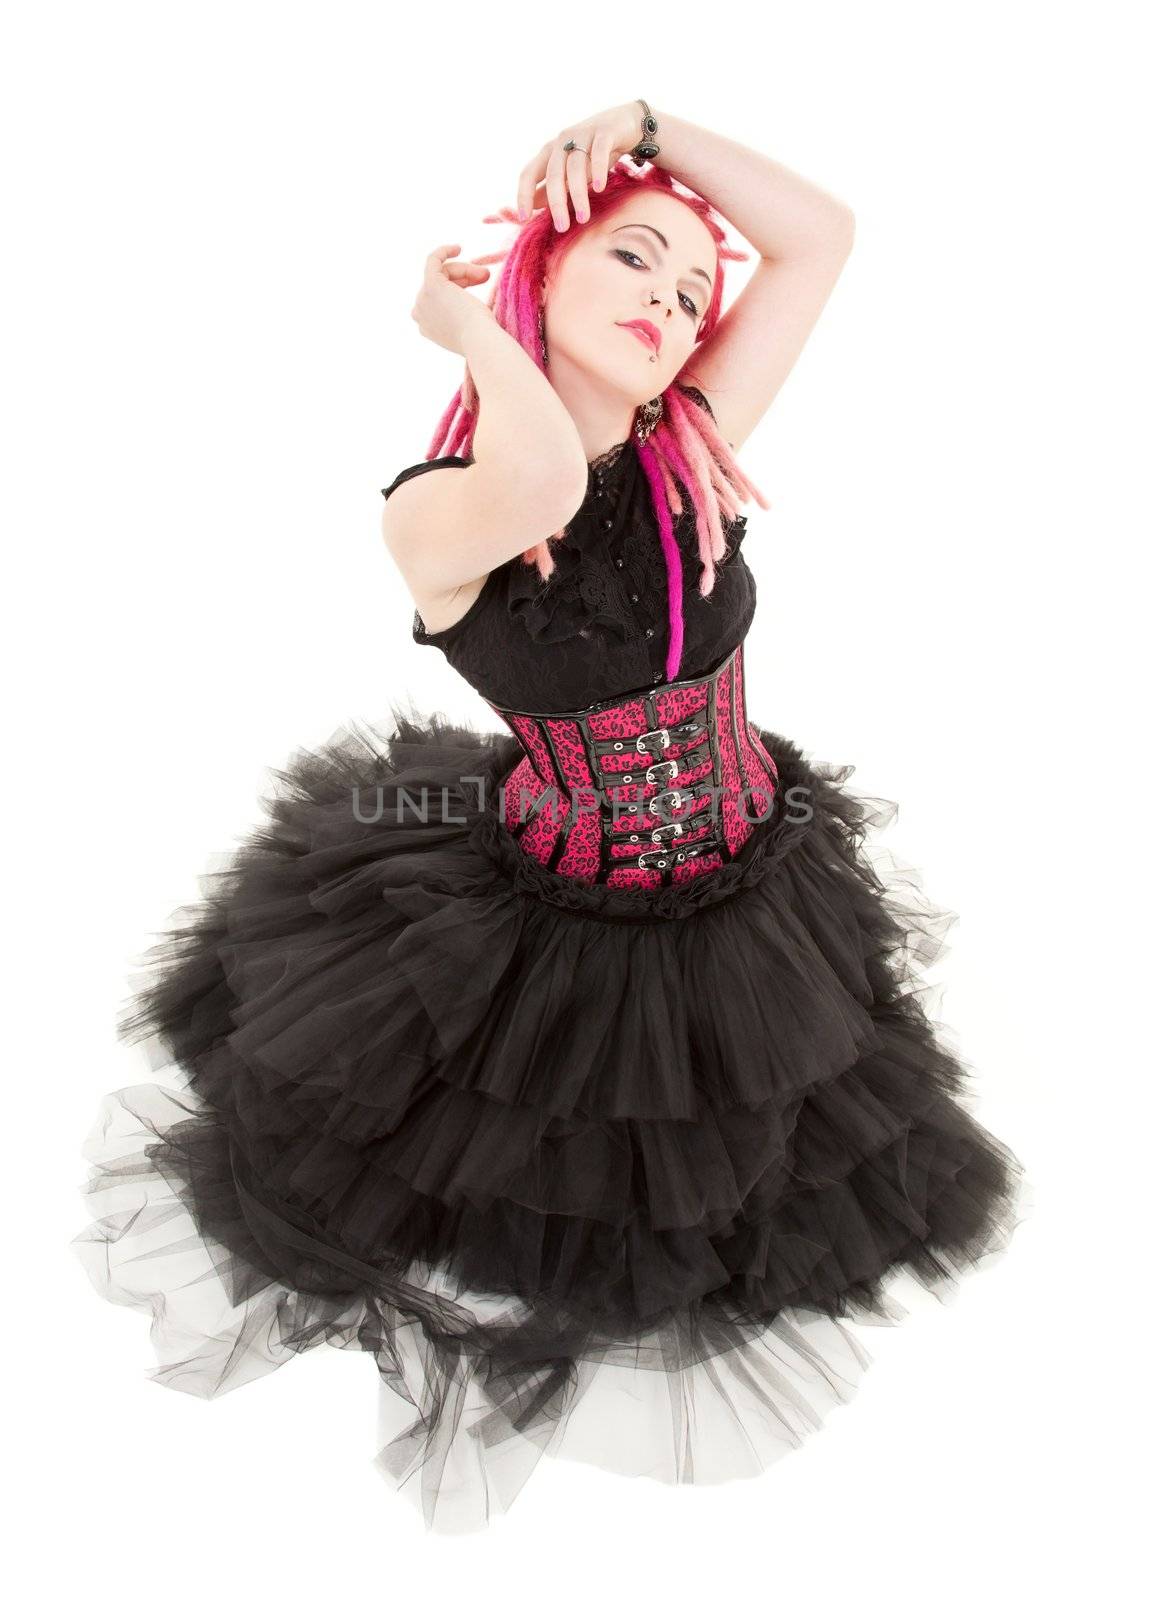 dancing pink hair girl by dolgachov